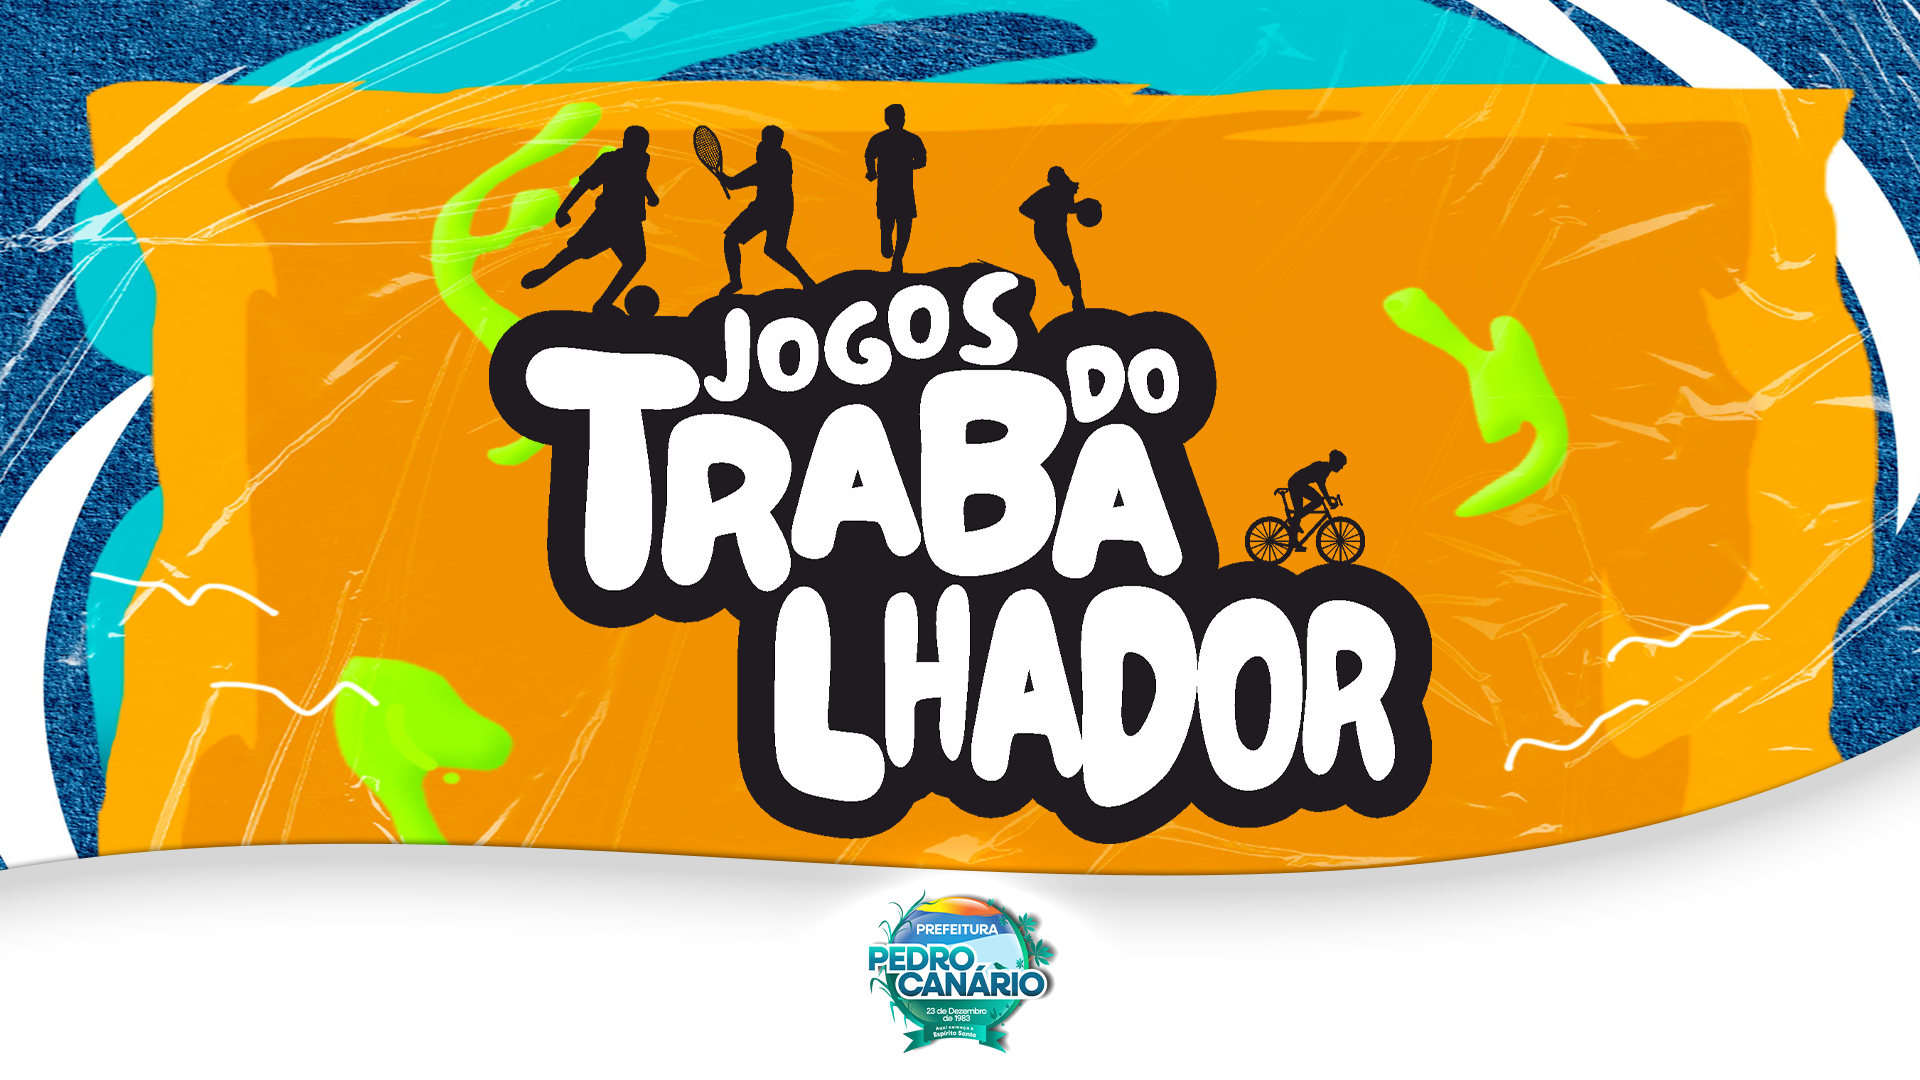 Prefeitura de Pedro Canário organiza mais uma edição dos Jogos do Trabalhador